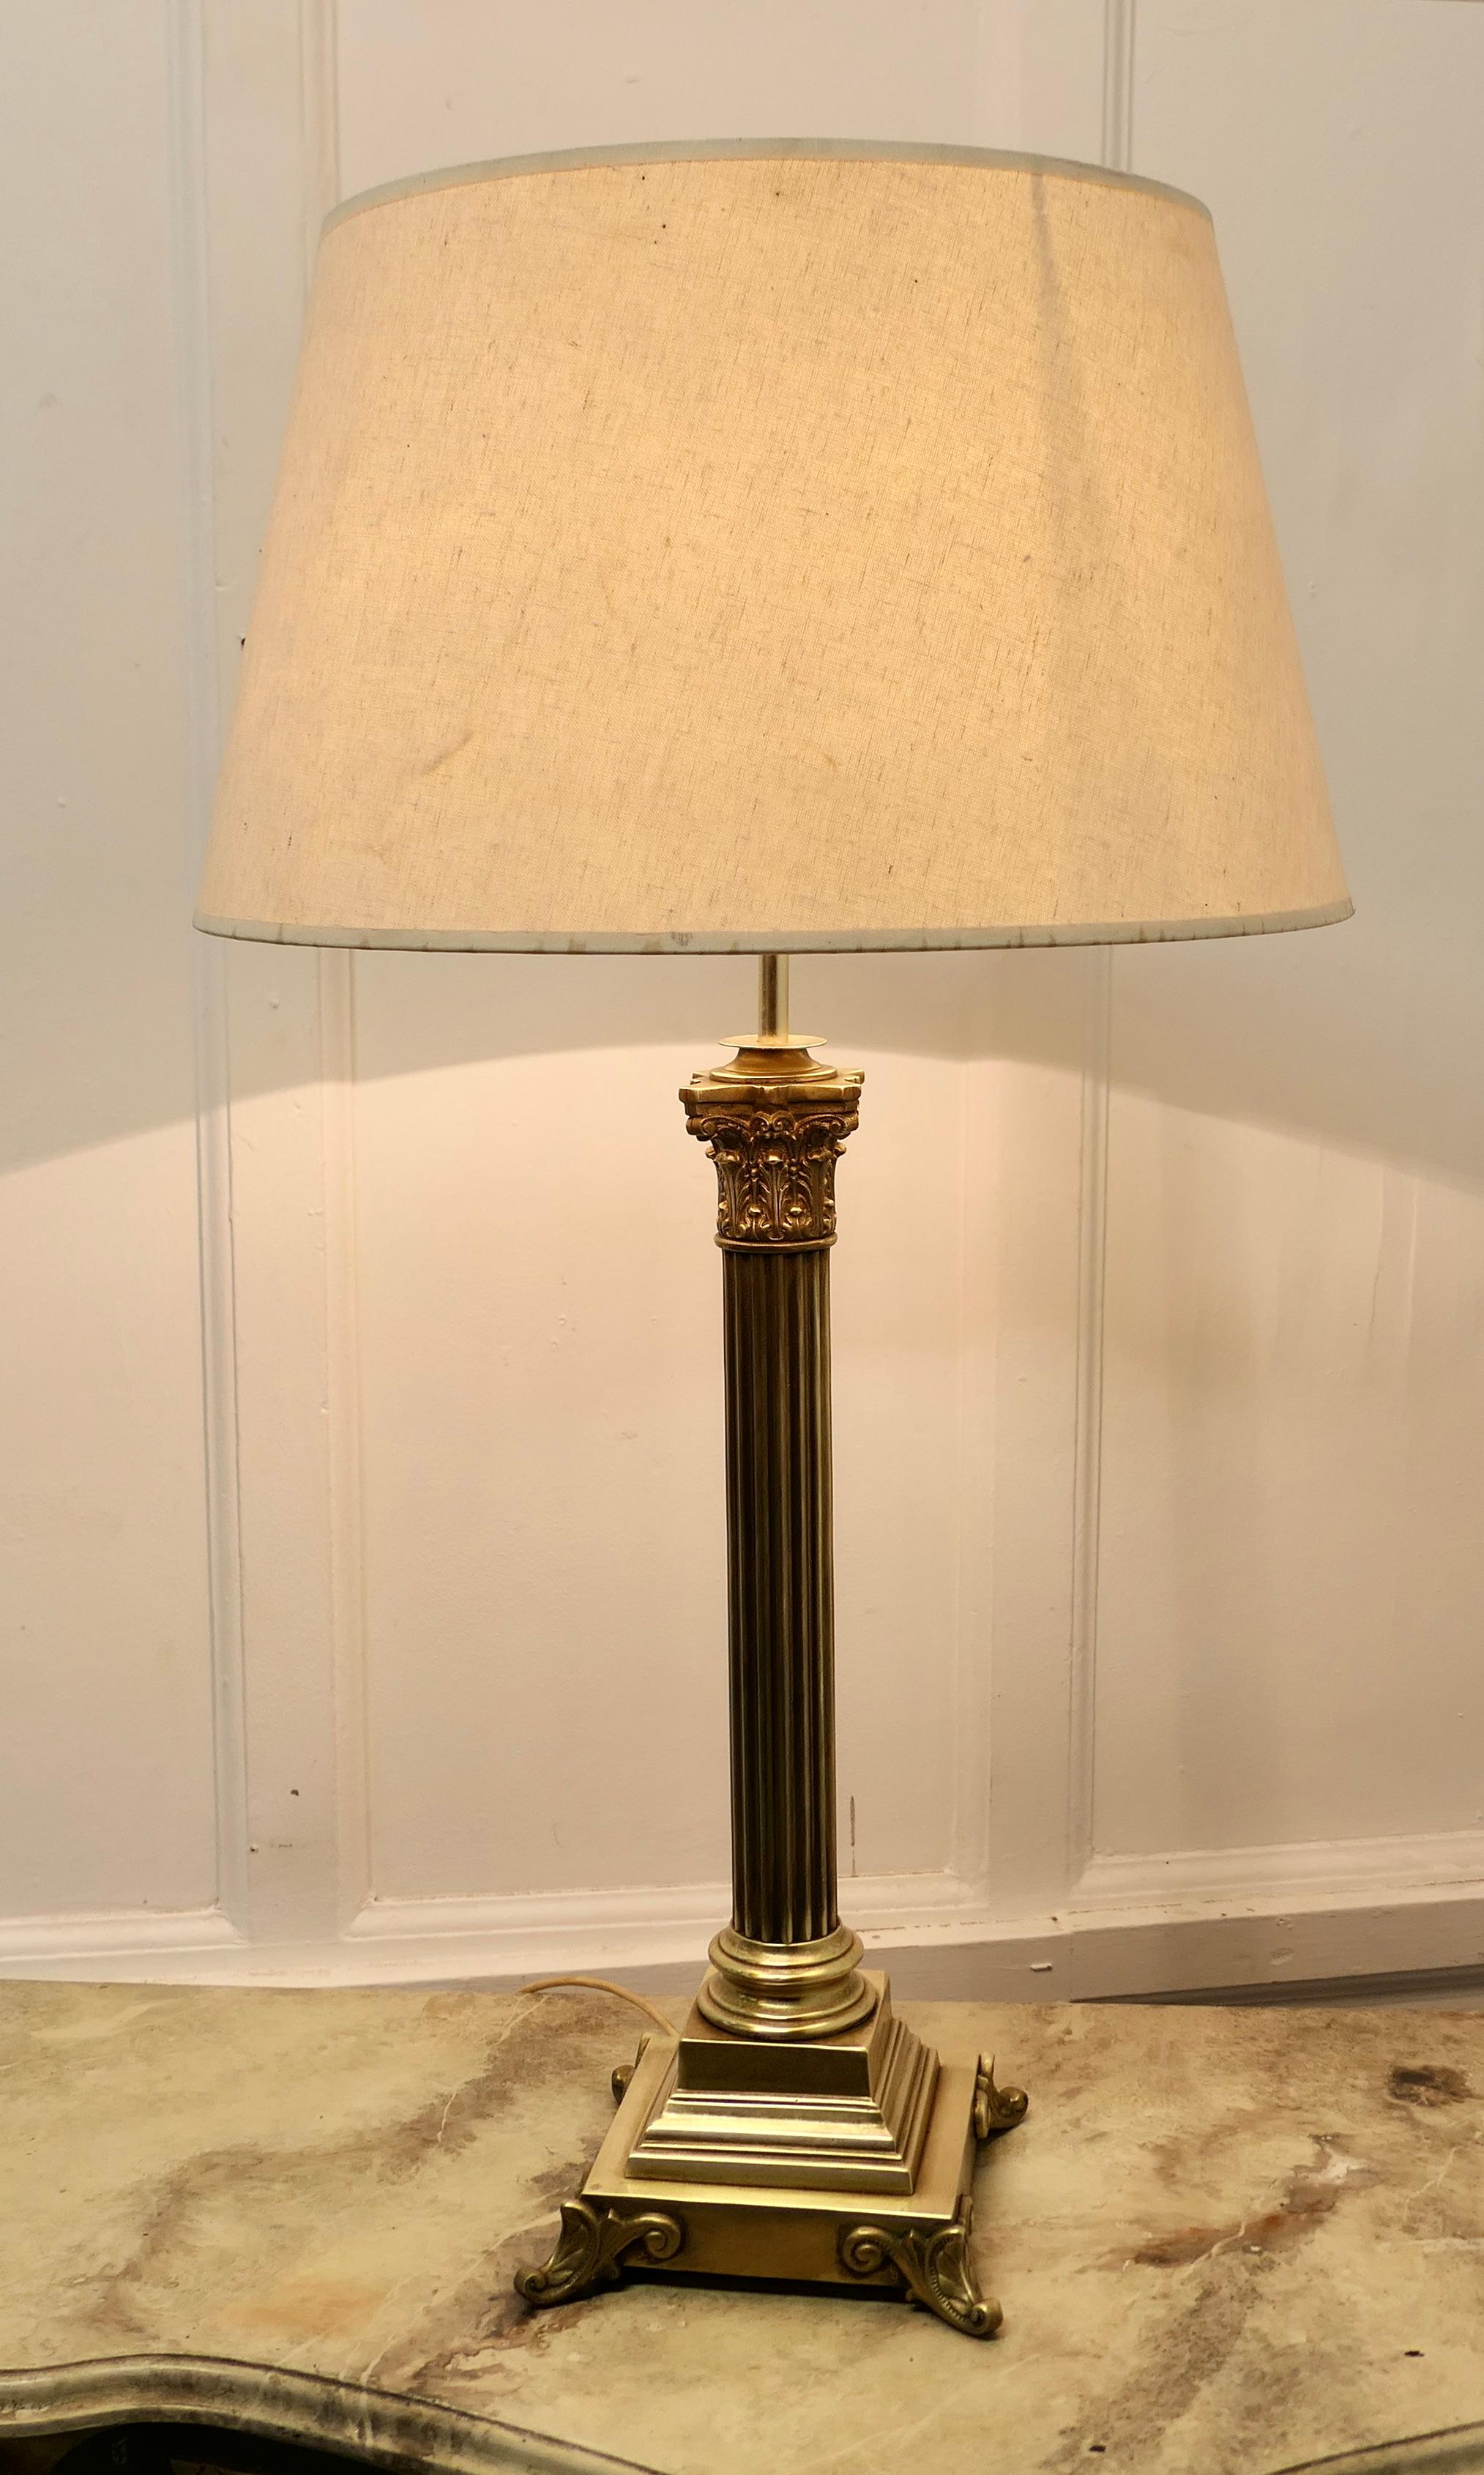 Hohe korinthische Säulen-Tischlampe aus Messing mit Lampenschirm

Dies ist eine sehr attraktive Lampe hat es eine schwere einzelne korinthischen Stil Spalte auf einem abgestuften rechteckigen Sockel gesetzt, es kommt mit einem neutralen farbigen